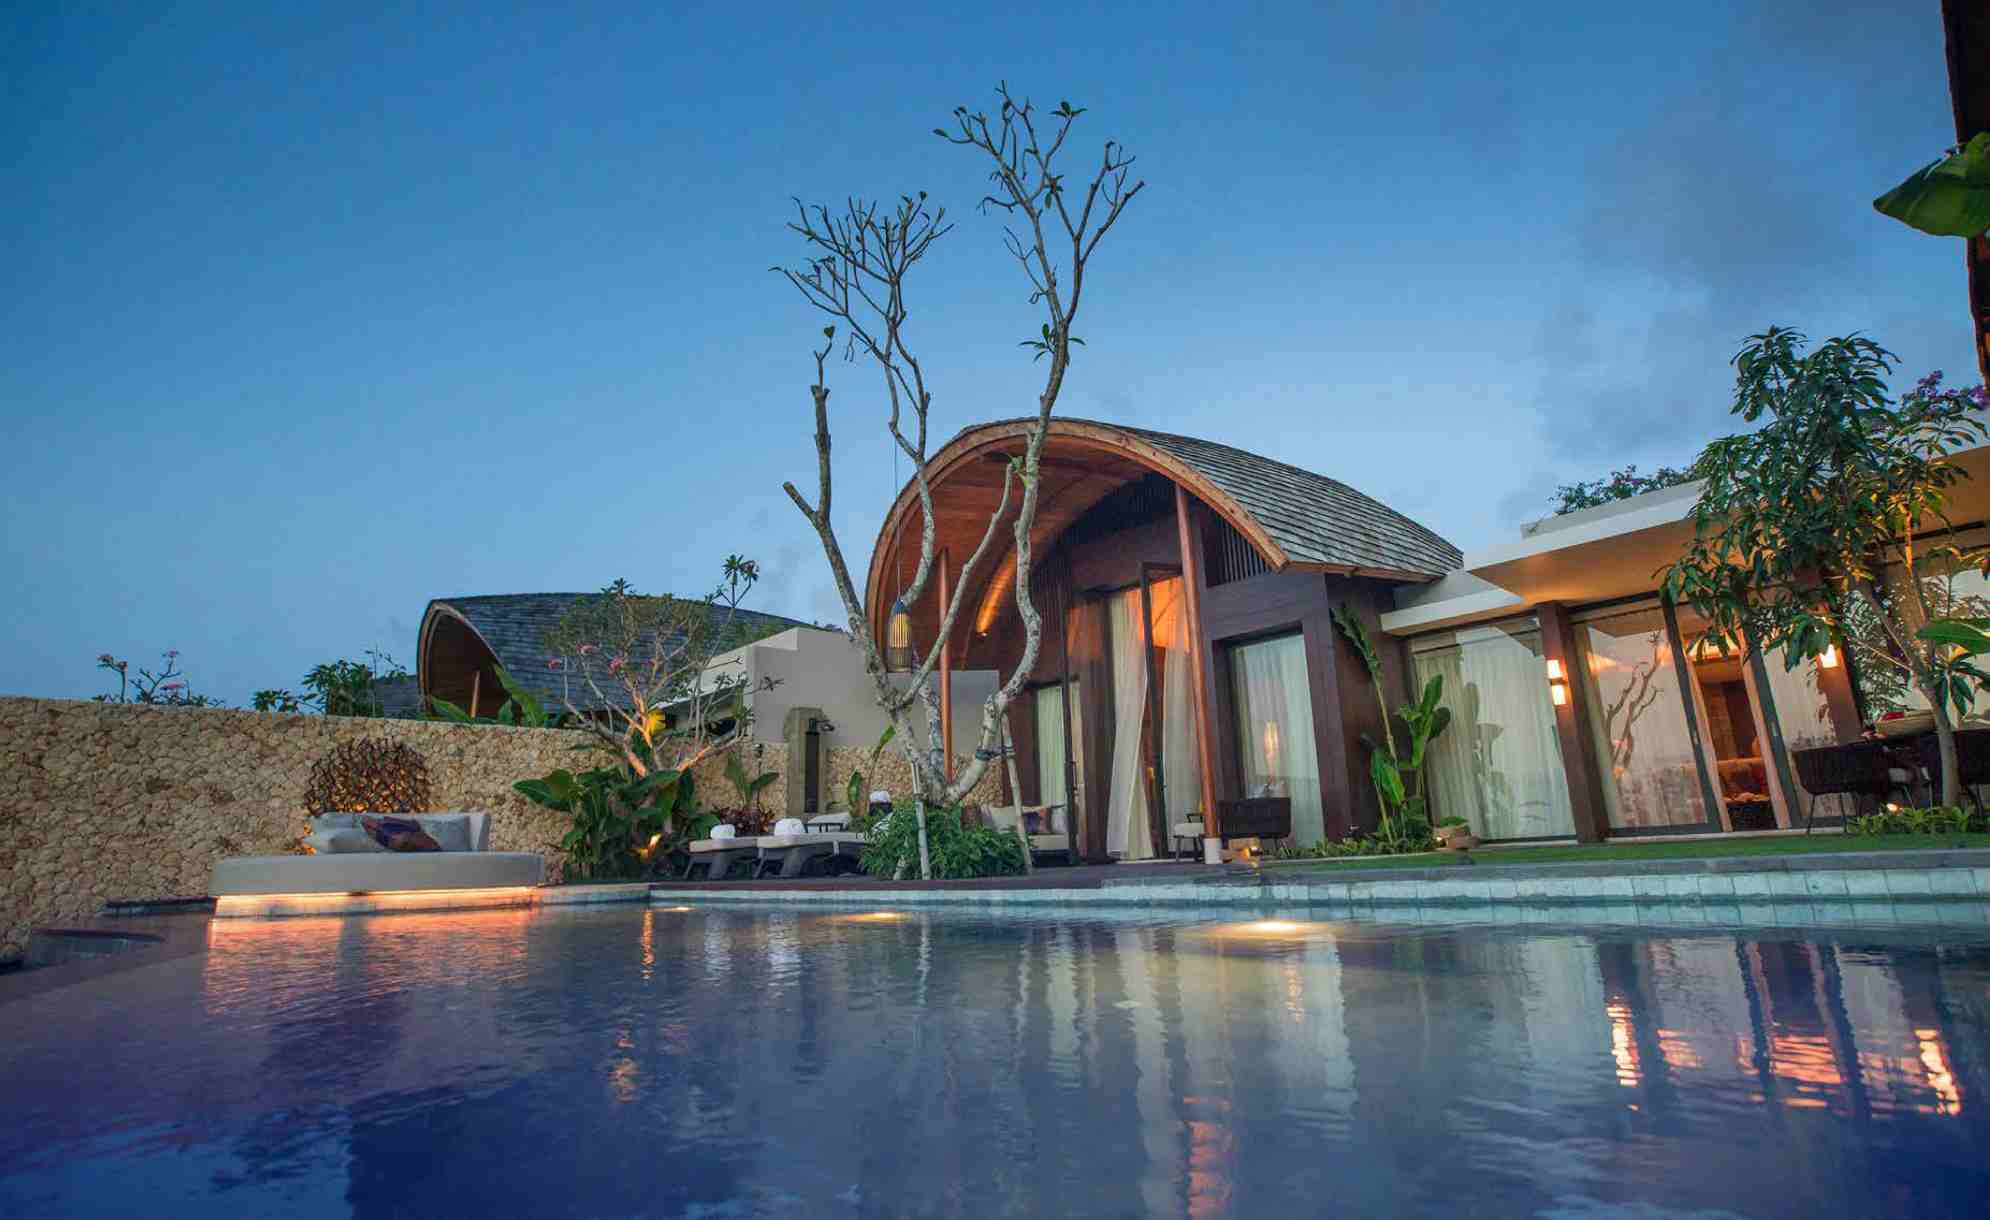 New World Grand Bali Resort